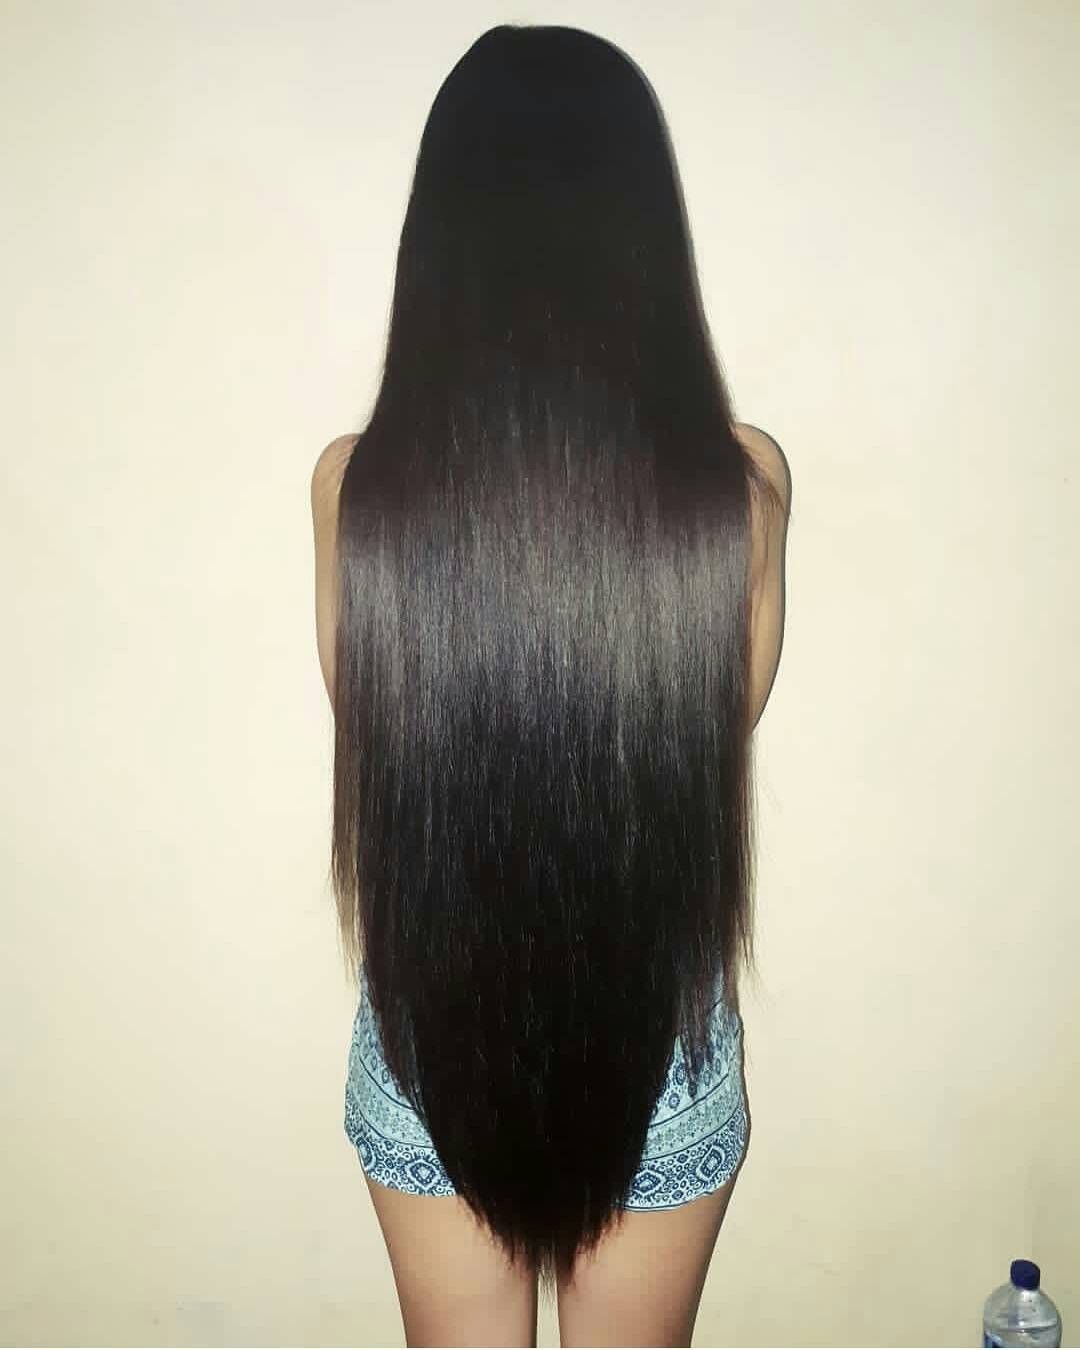 Стрижка длинных волос полукругом сзади фото